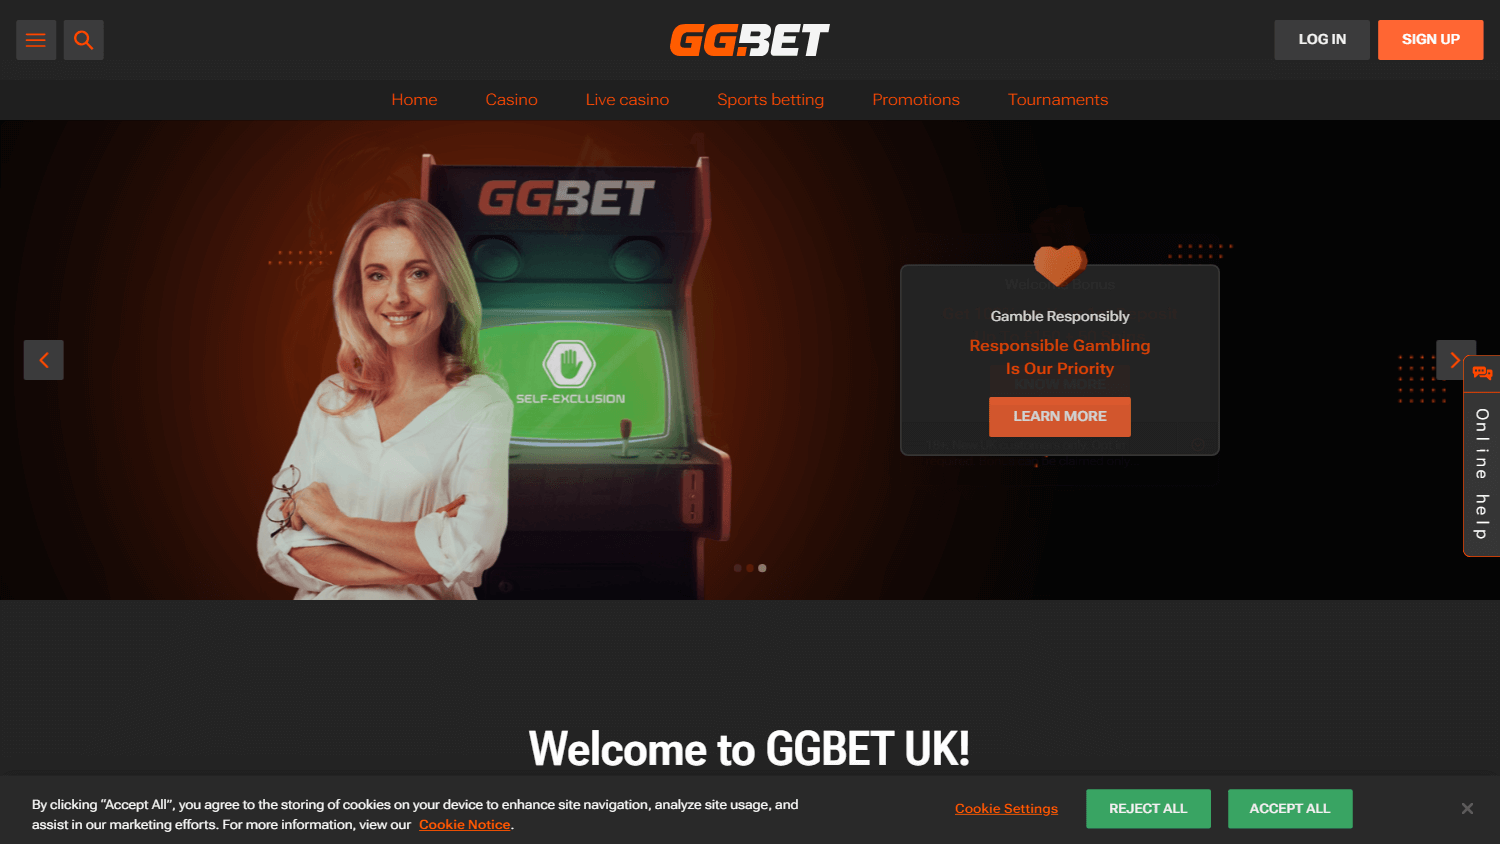 ggbet_casino_uk_homepage_desktop